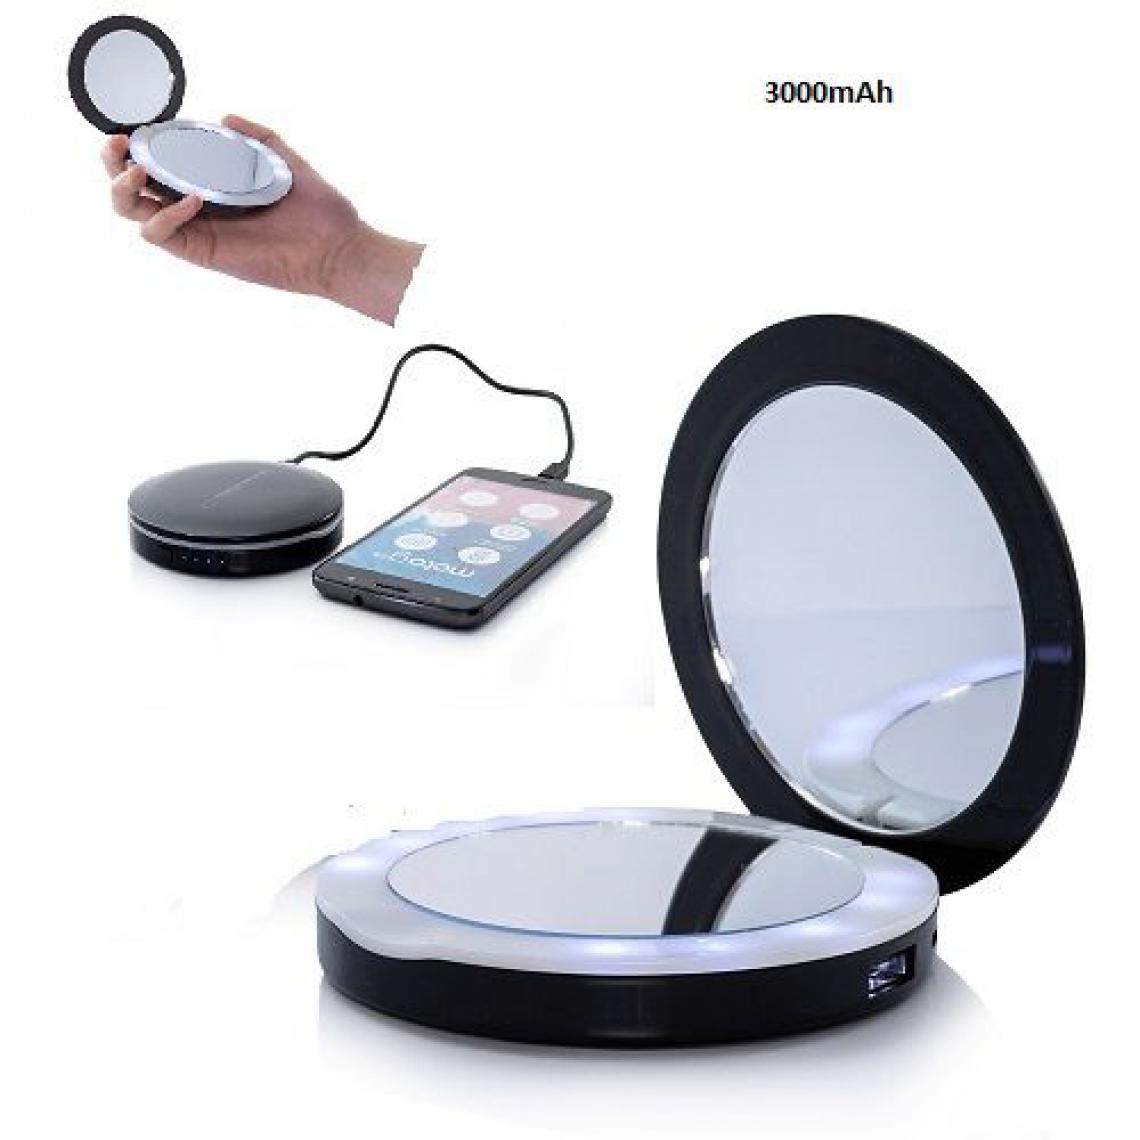 Ozzzo - Chargeur batterie externe miroir led 3000mAh ozzzo noir pour UMiDIGI F2 - Autres accessoires smartphone